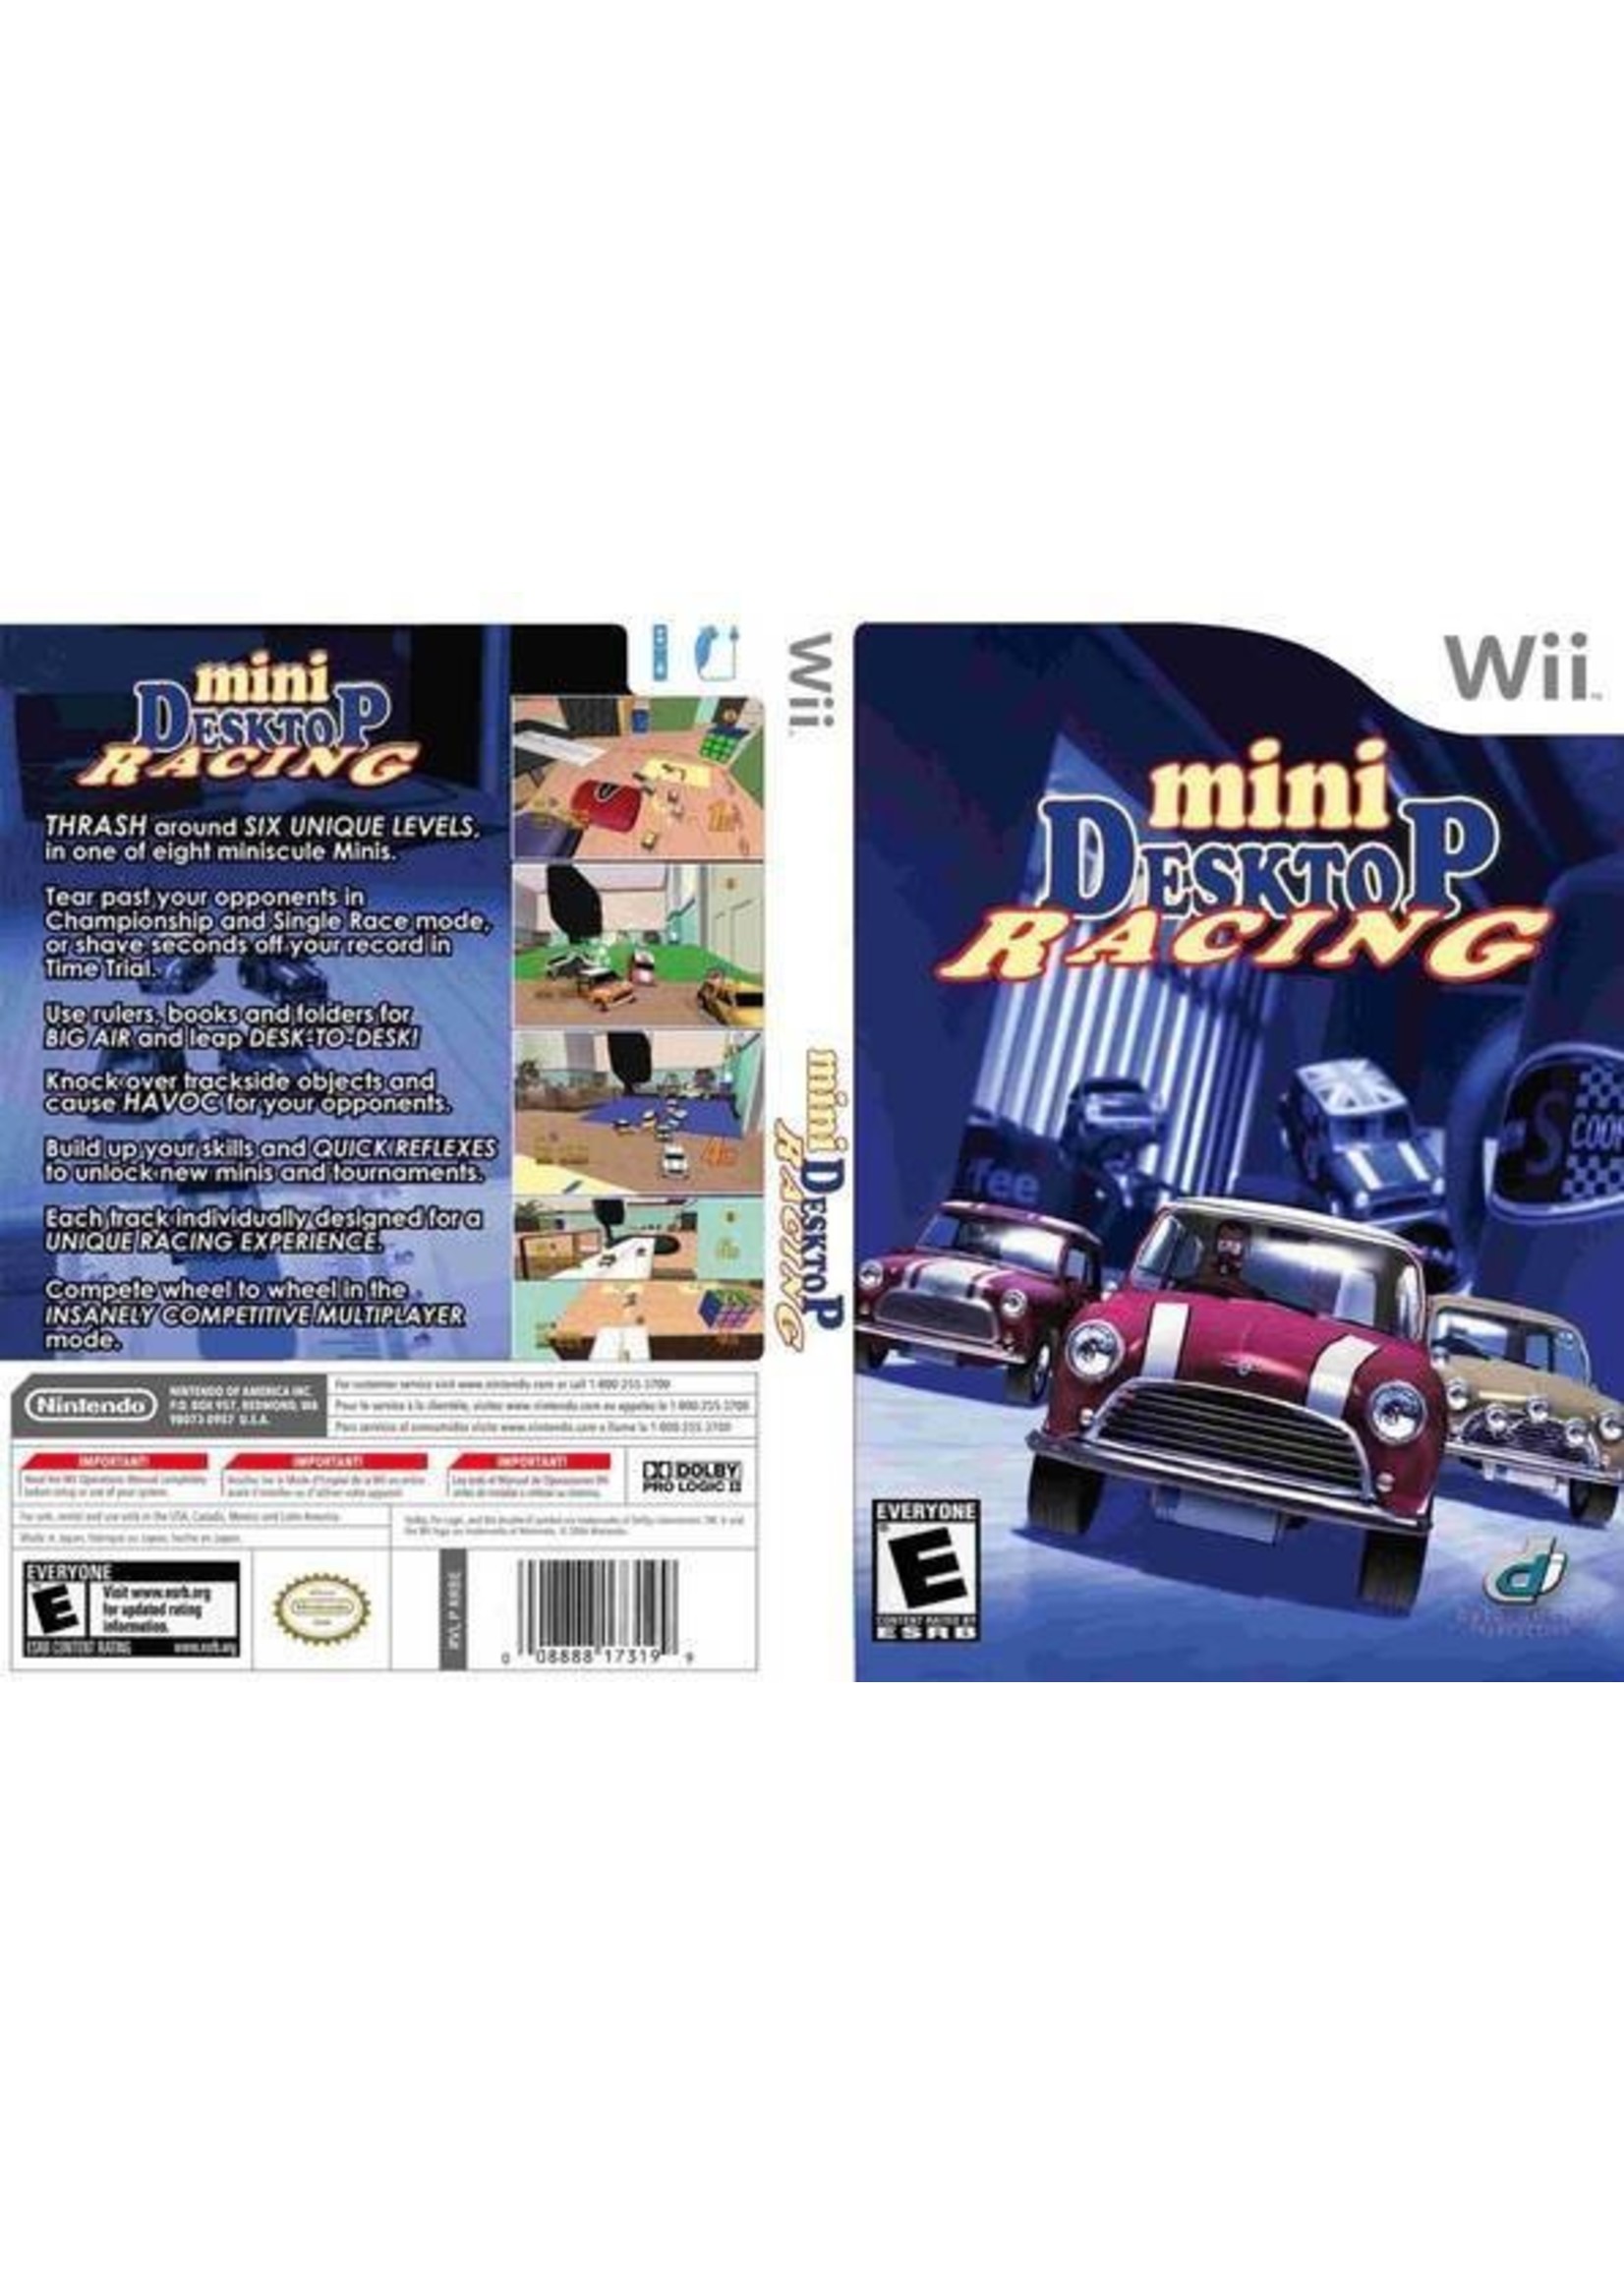 Nintendo Wii Mini Desktop Racing